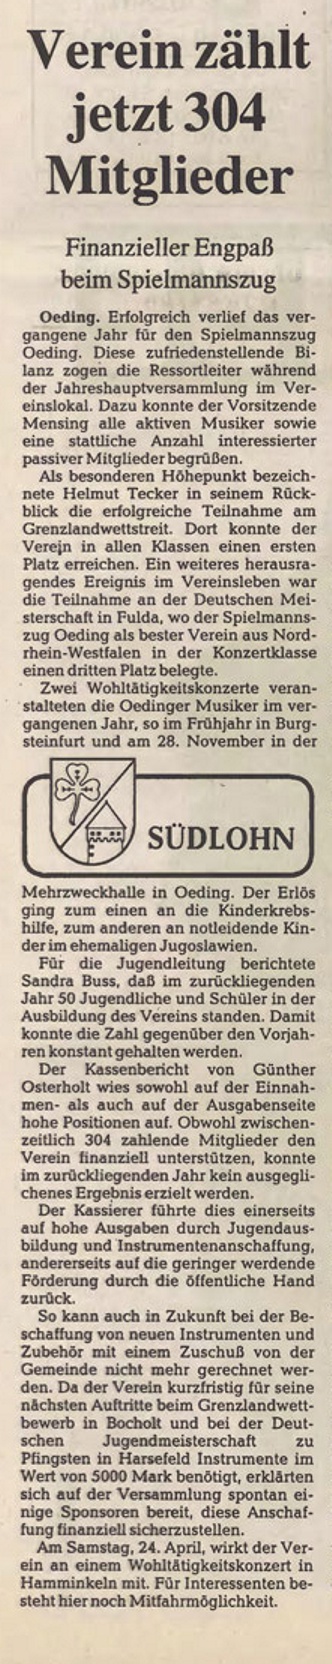 Jahreshauptversammlung des Spielmannszug Oeding 1993 | BZ 24.03.1993